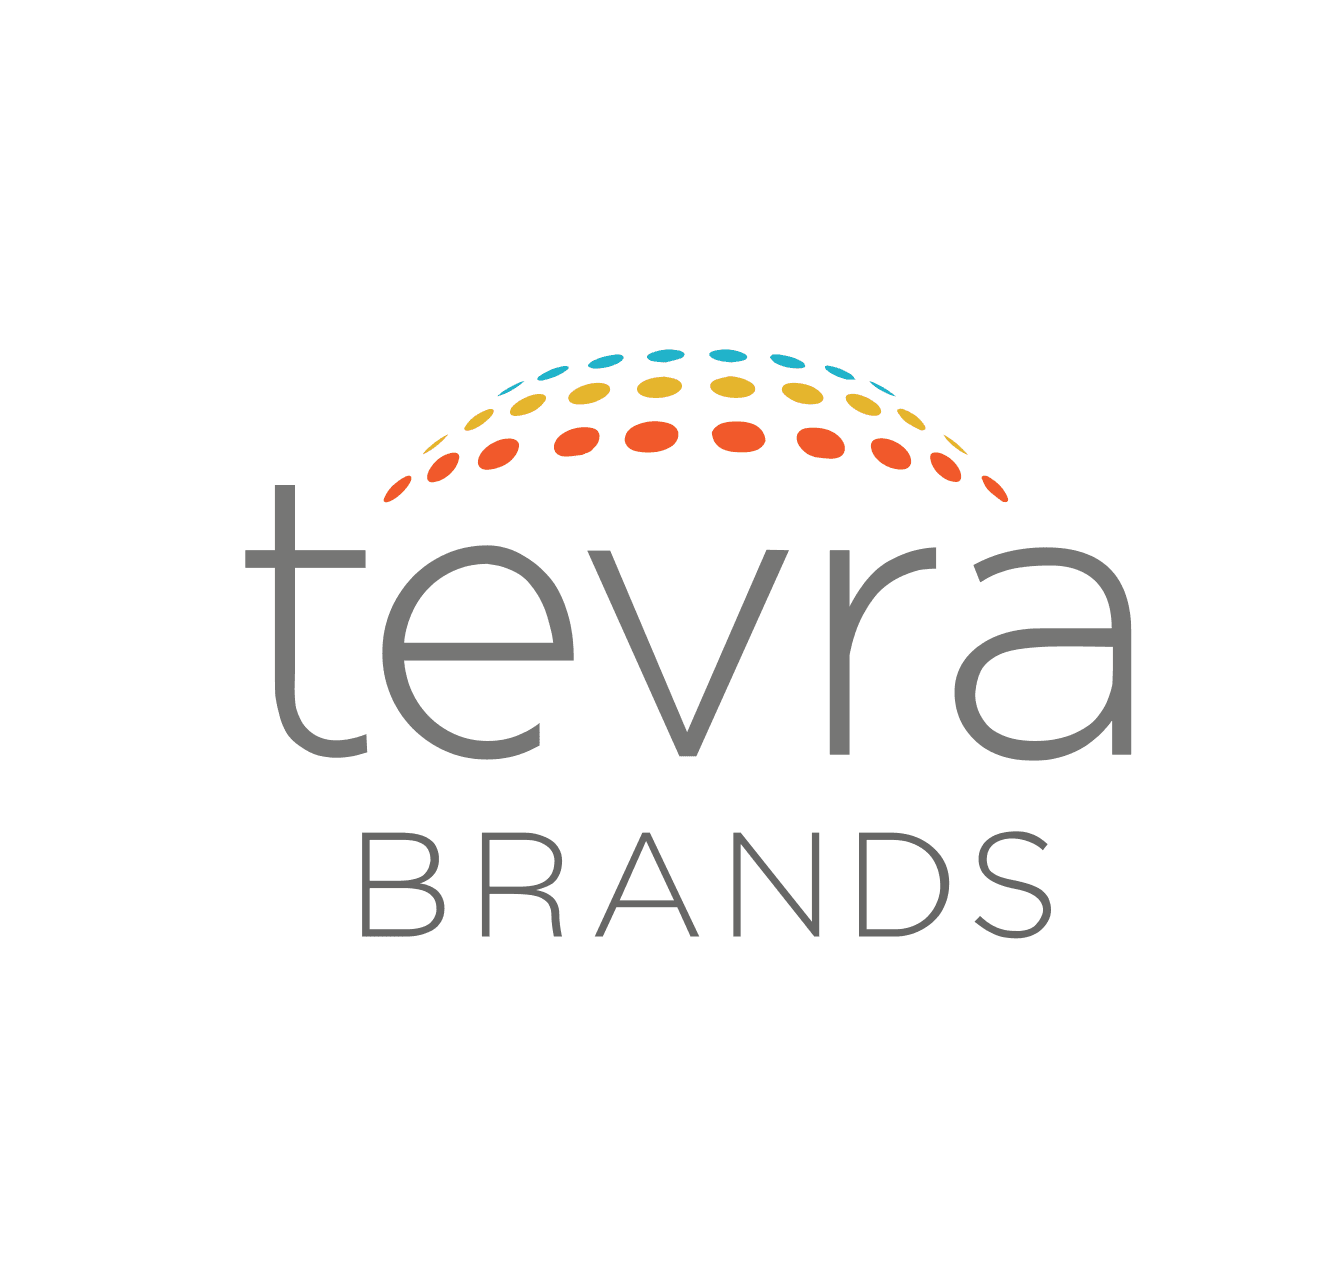  Tevra Brands